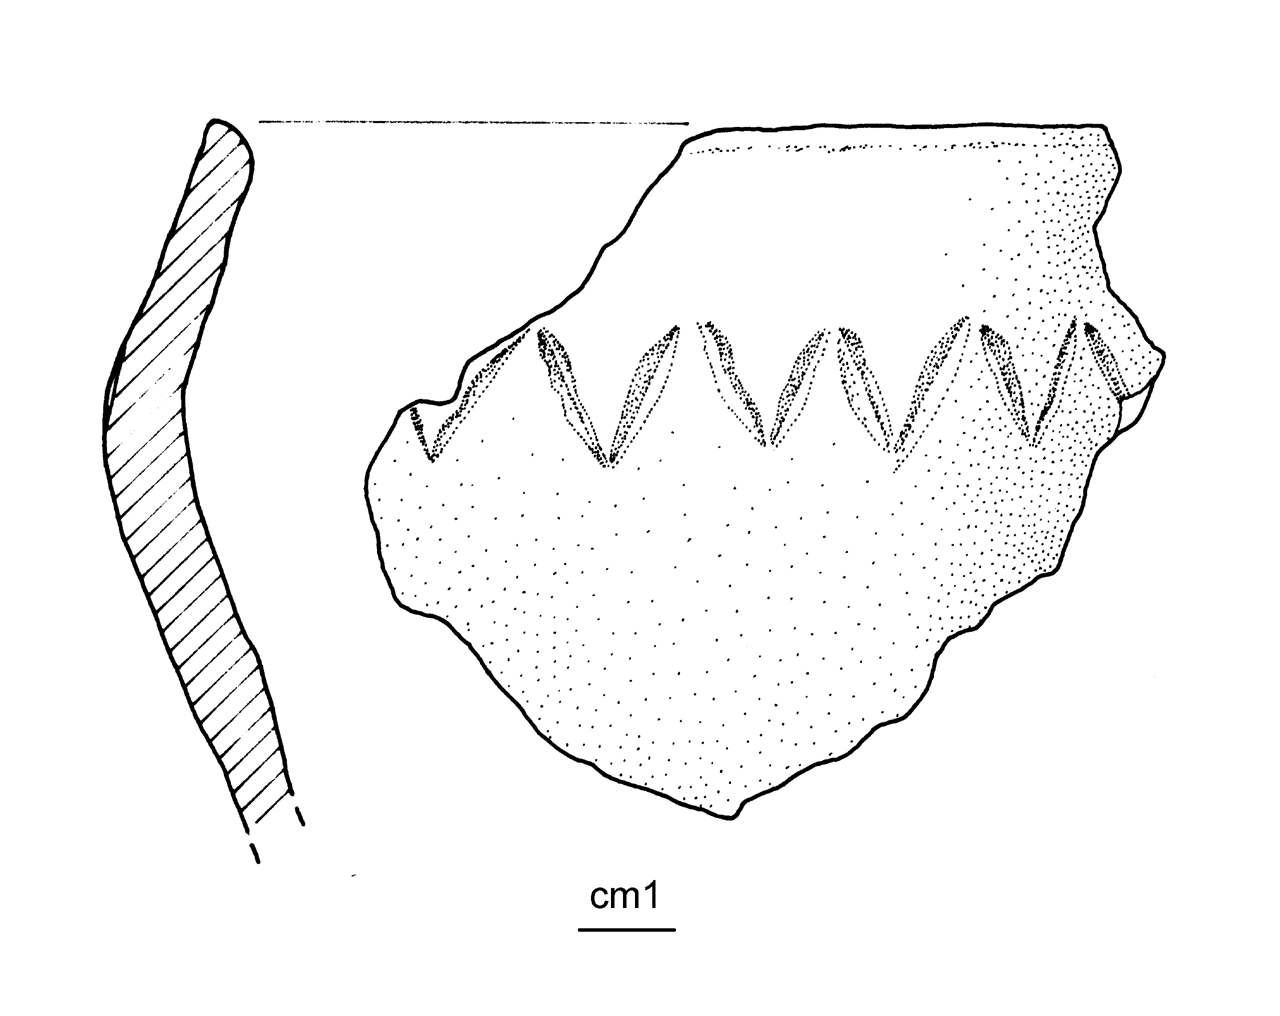 vaso situliforme - cultura ligure dell'età del Ferro (inizio/ metà VI-V a.C)